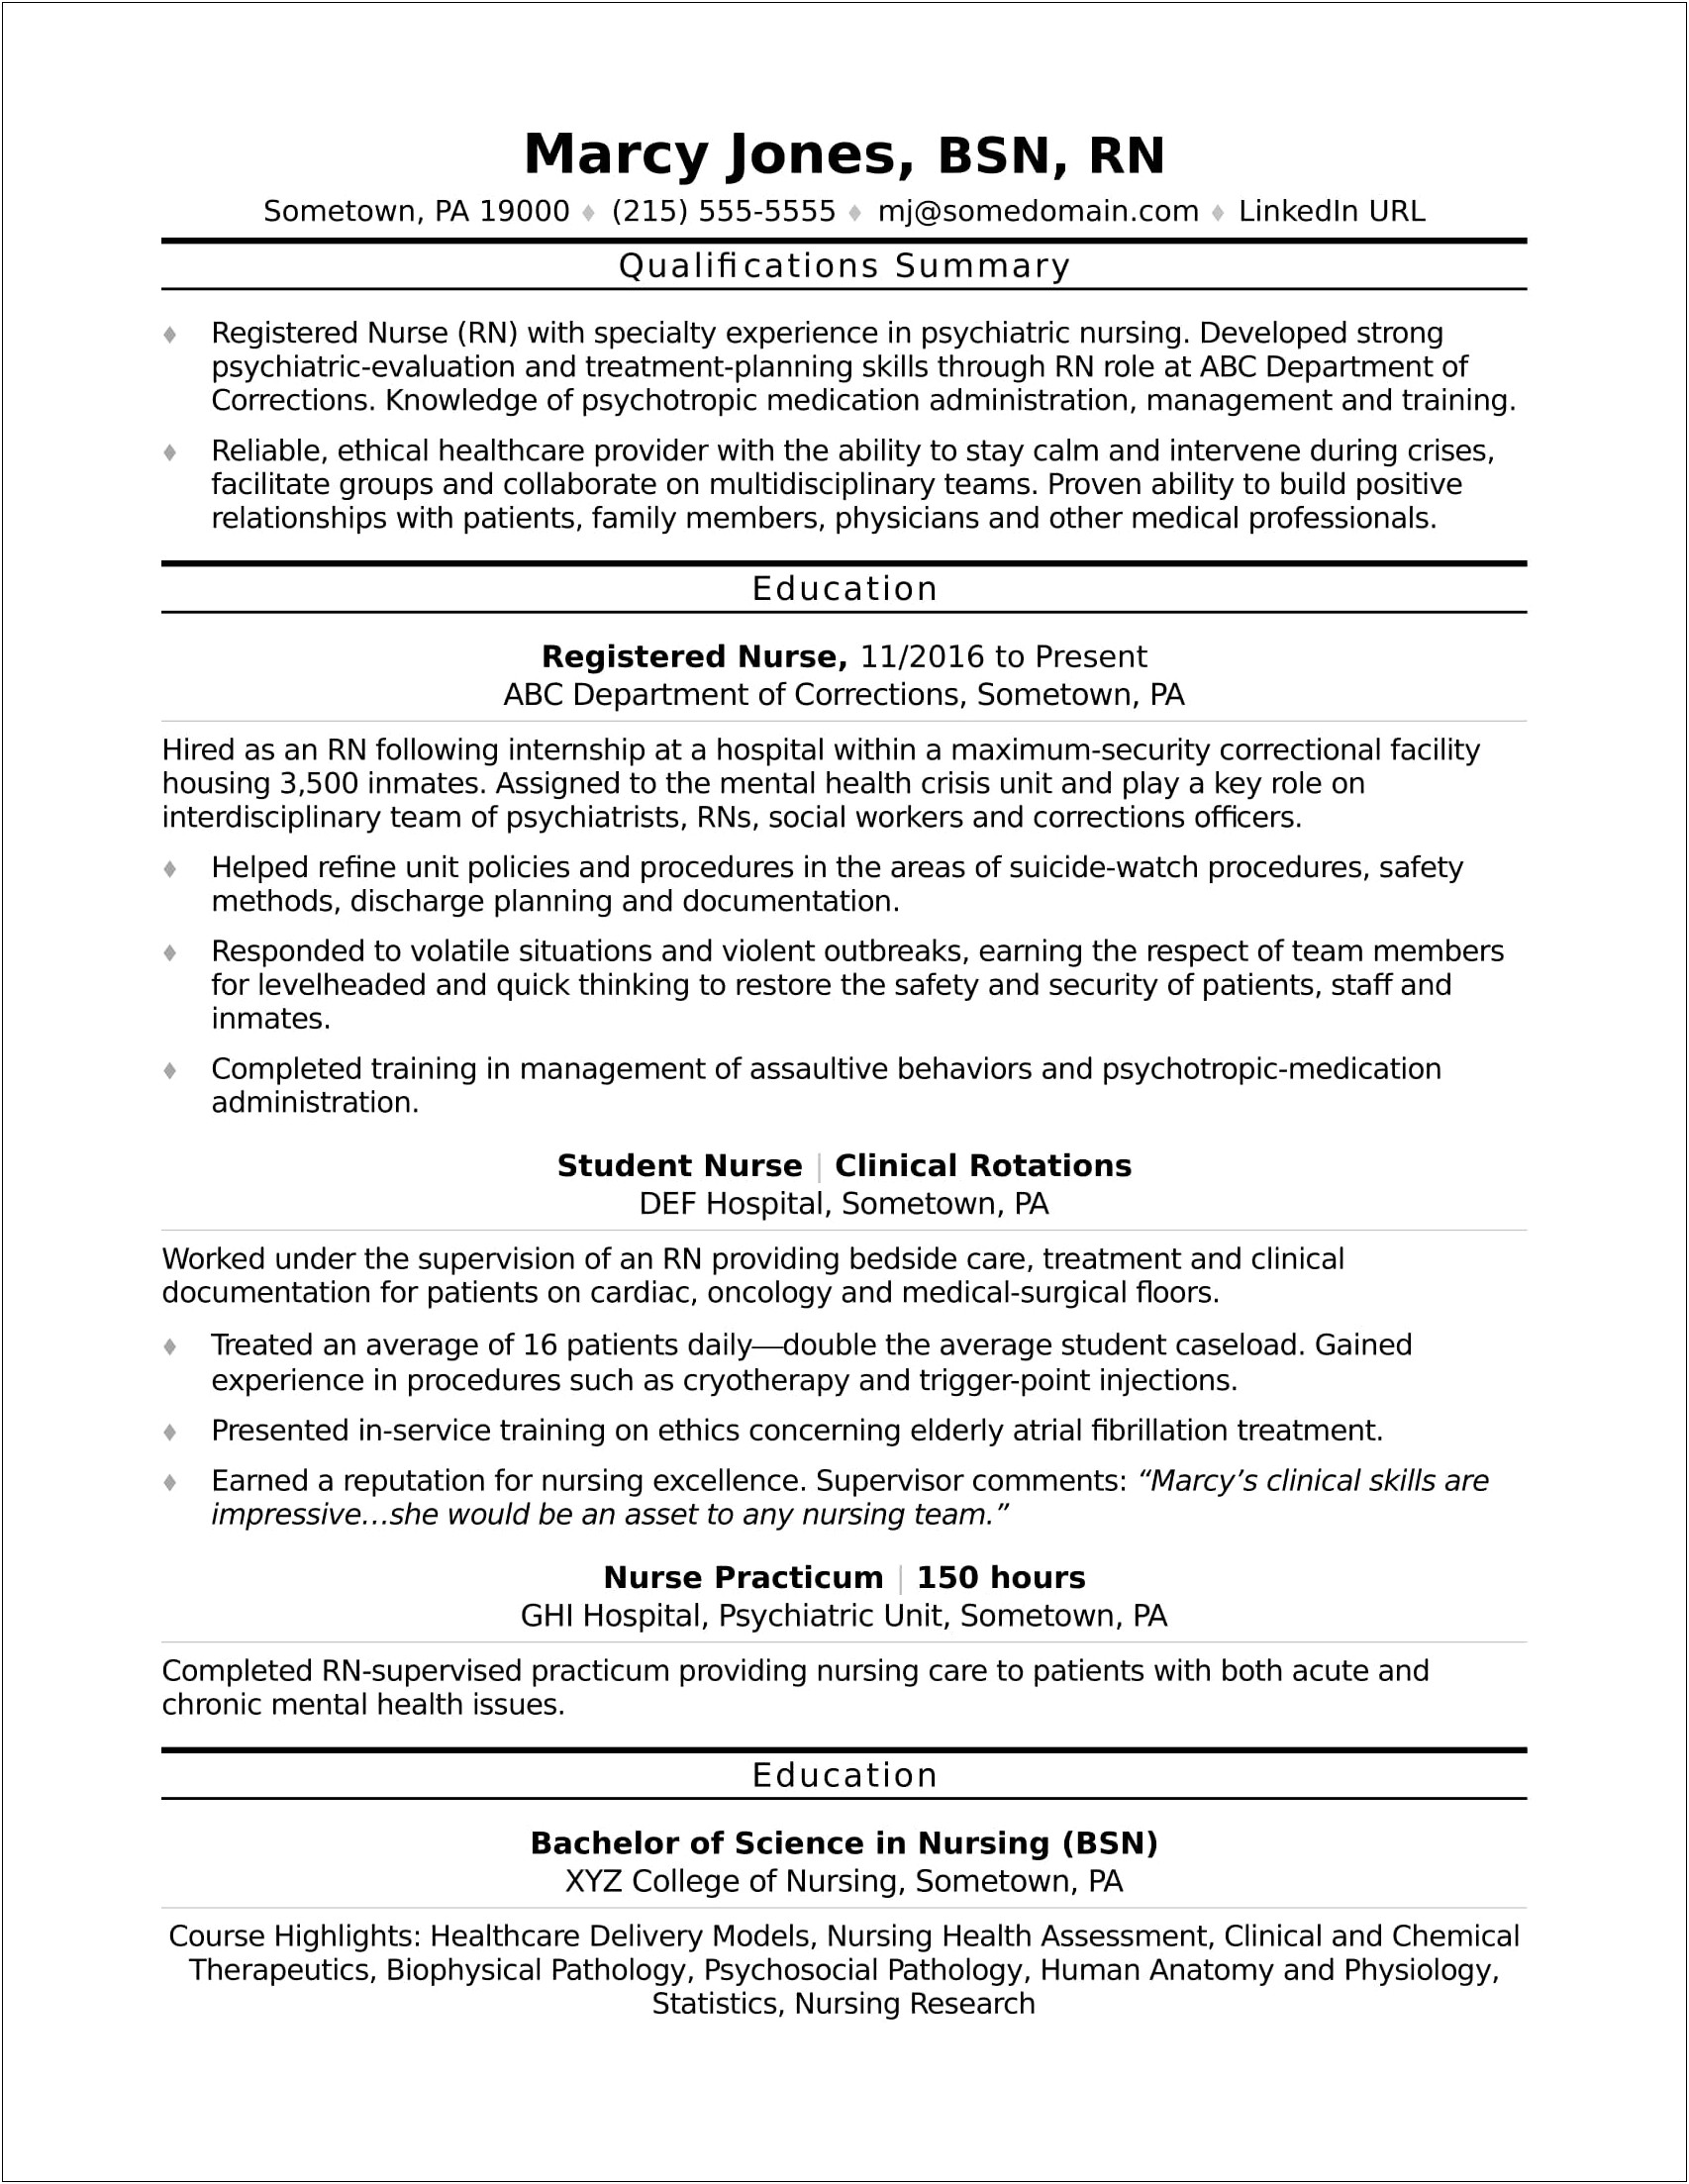 Nursing Resume For Graduate School Admission